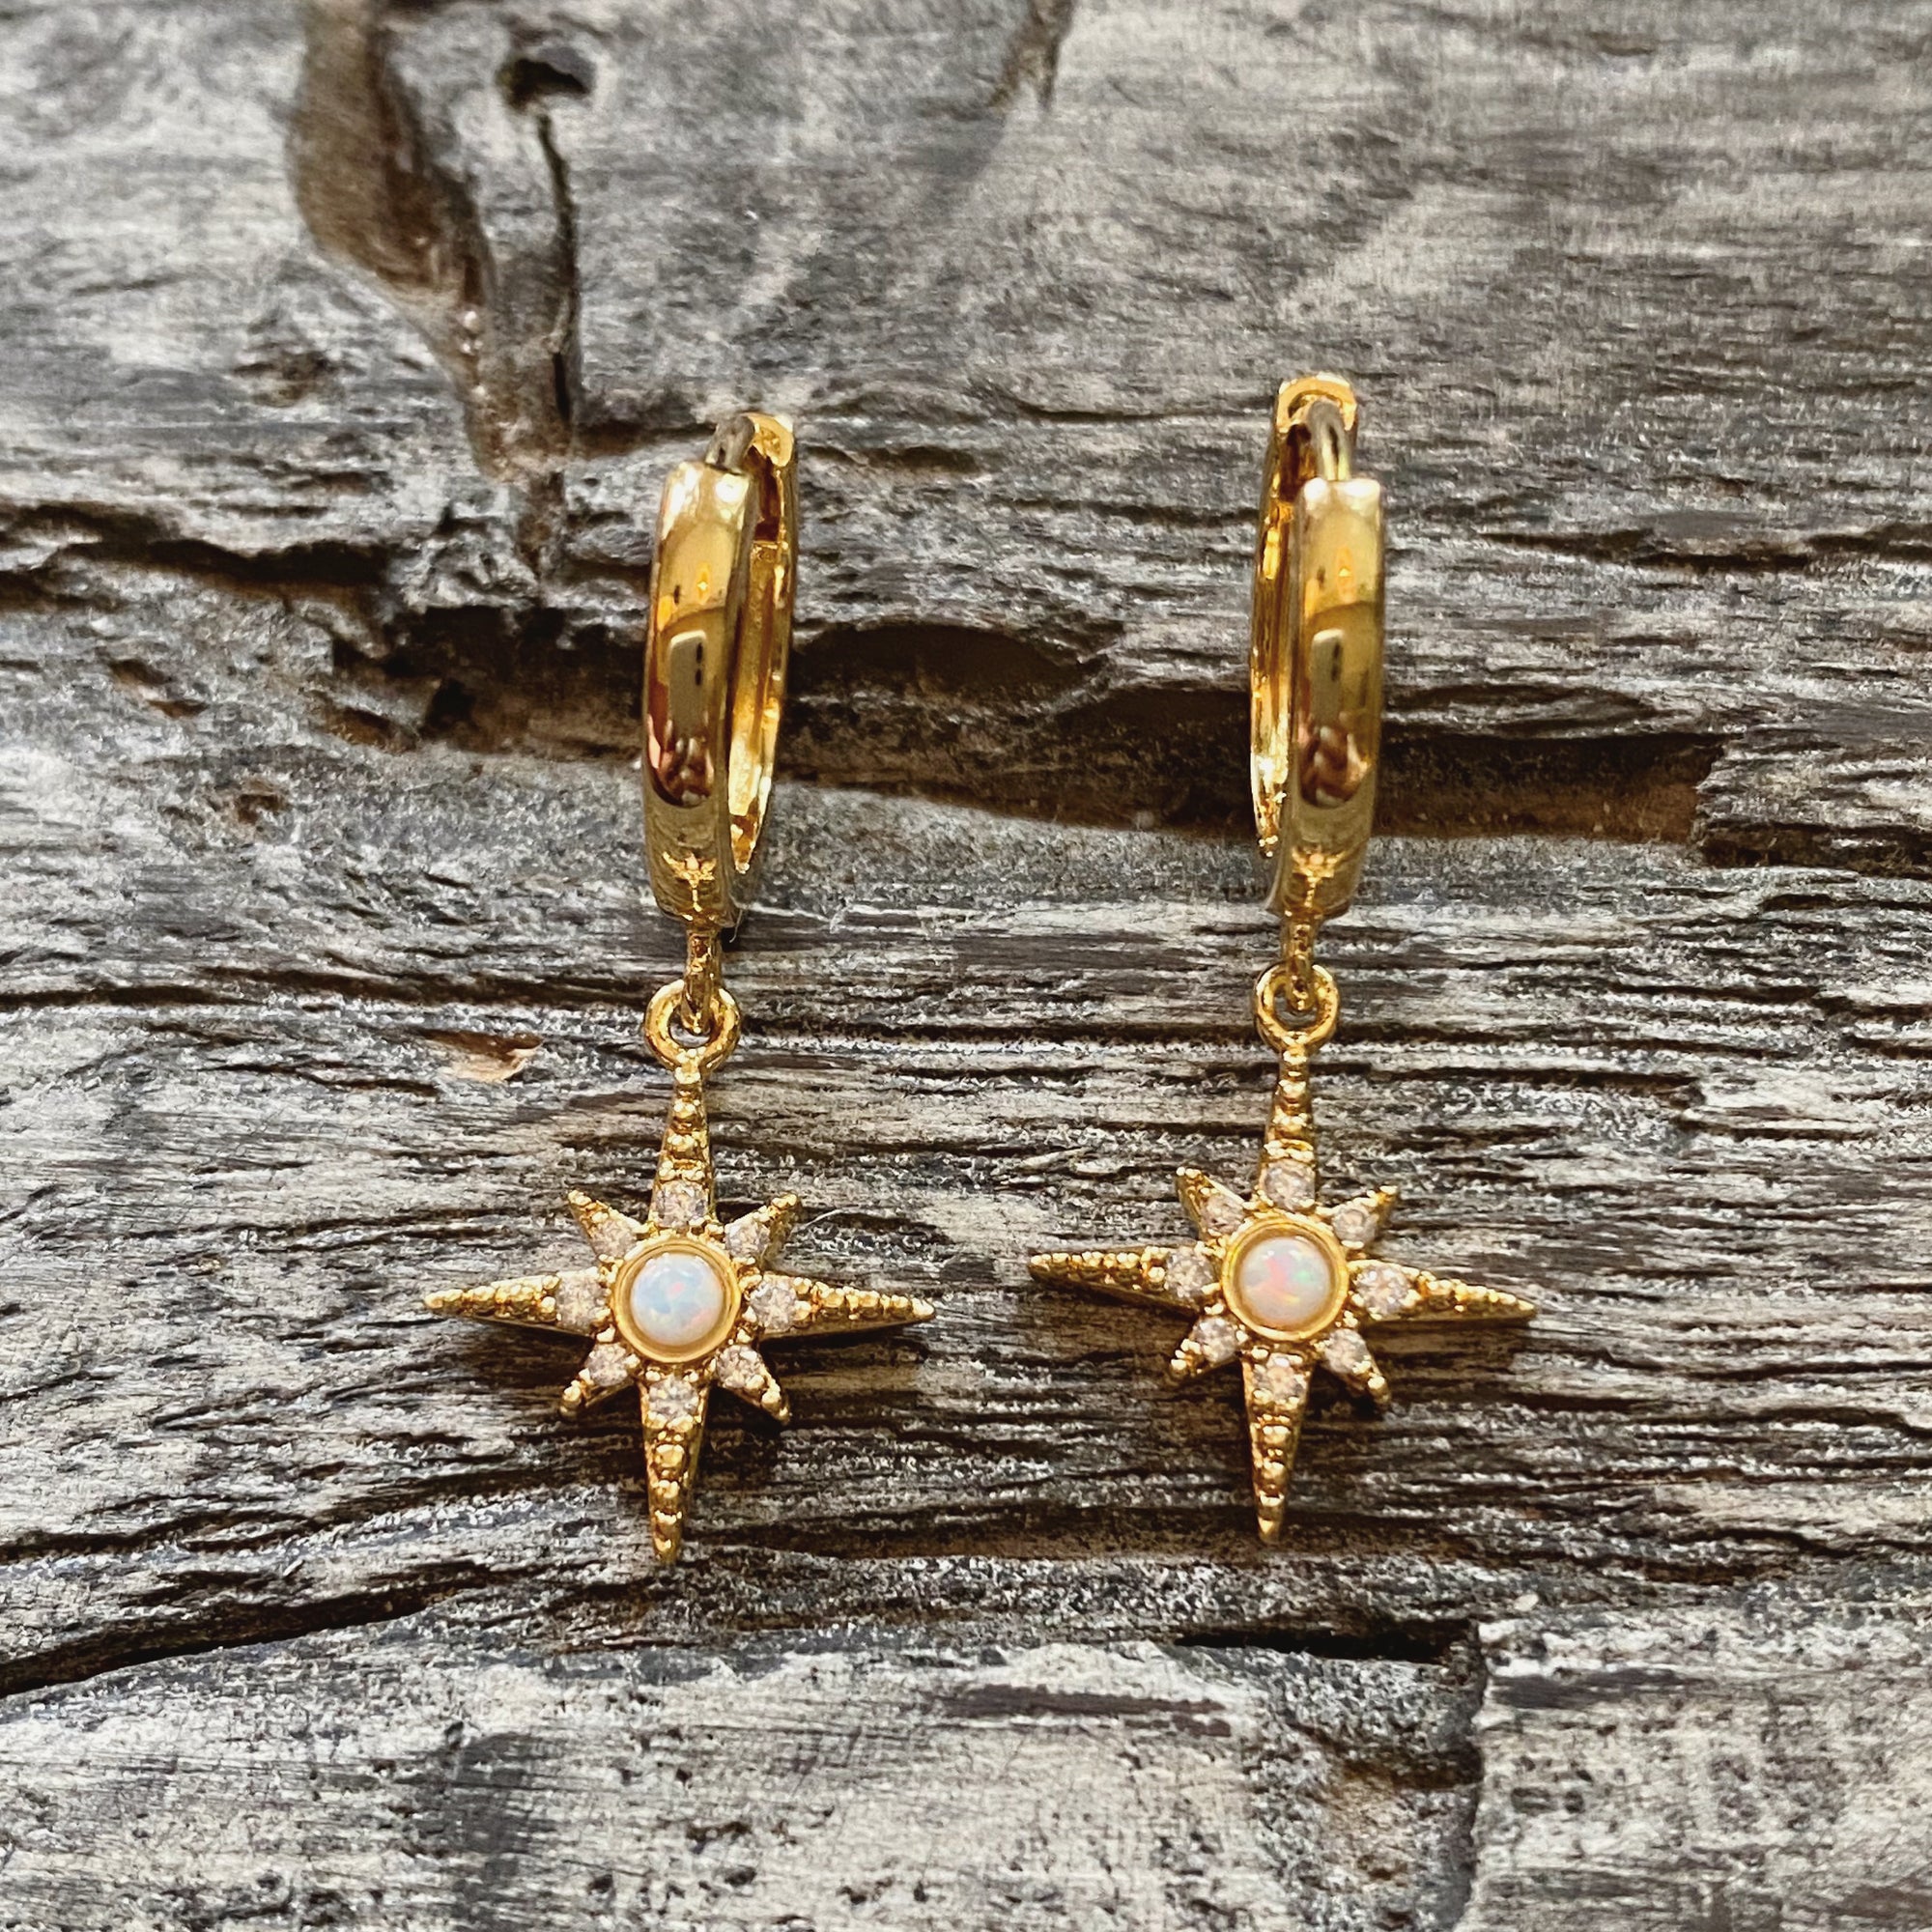 Star burst opal earrings